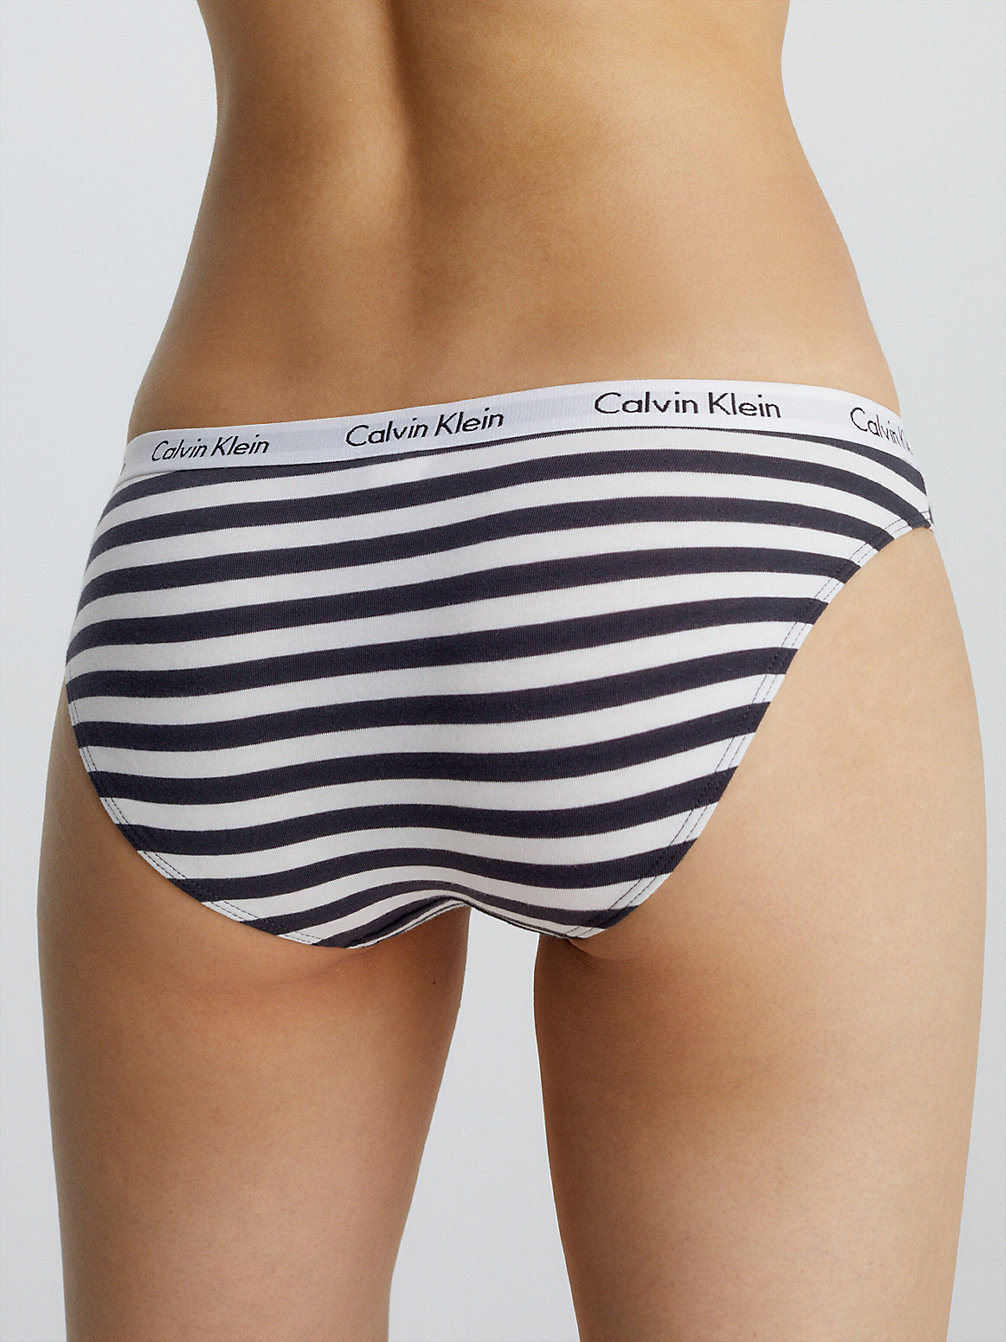 RAINER/BLUE GRAPHITE Culotte - Carousel undefined femmes Calvin Klein